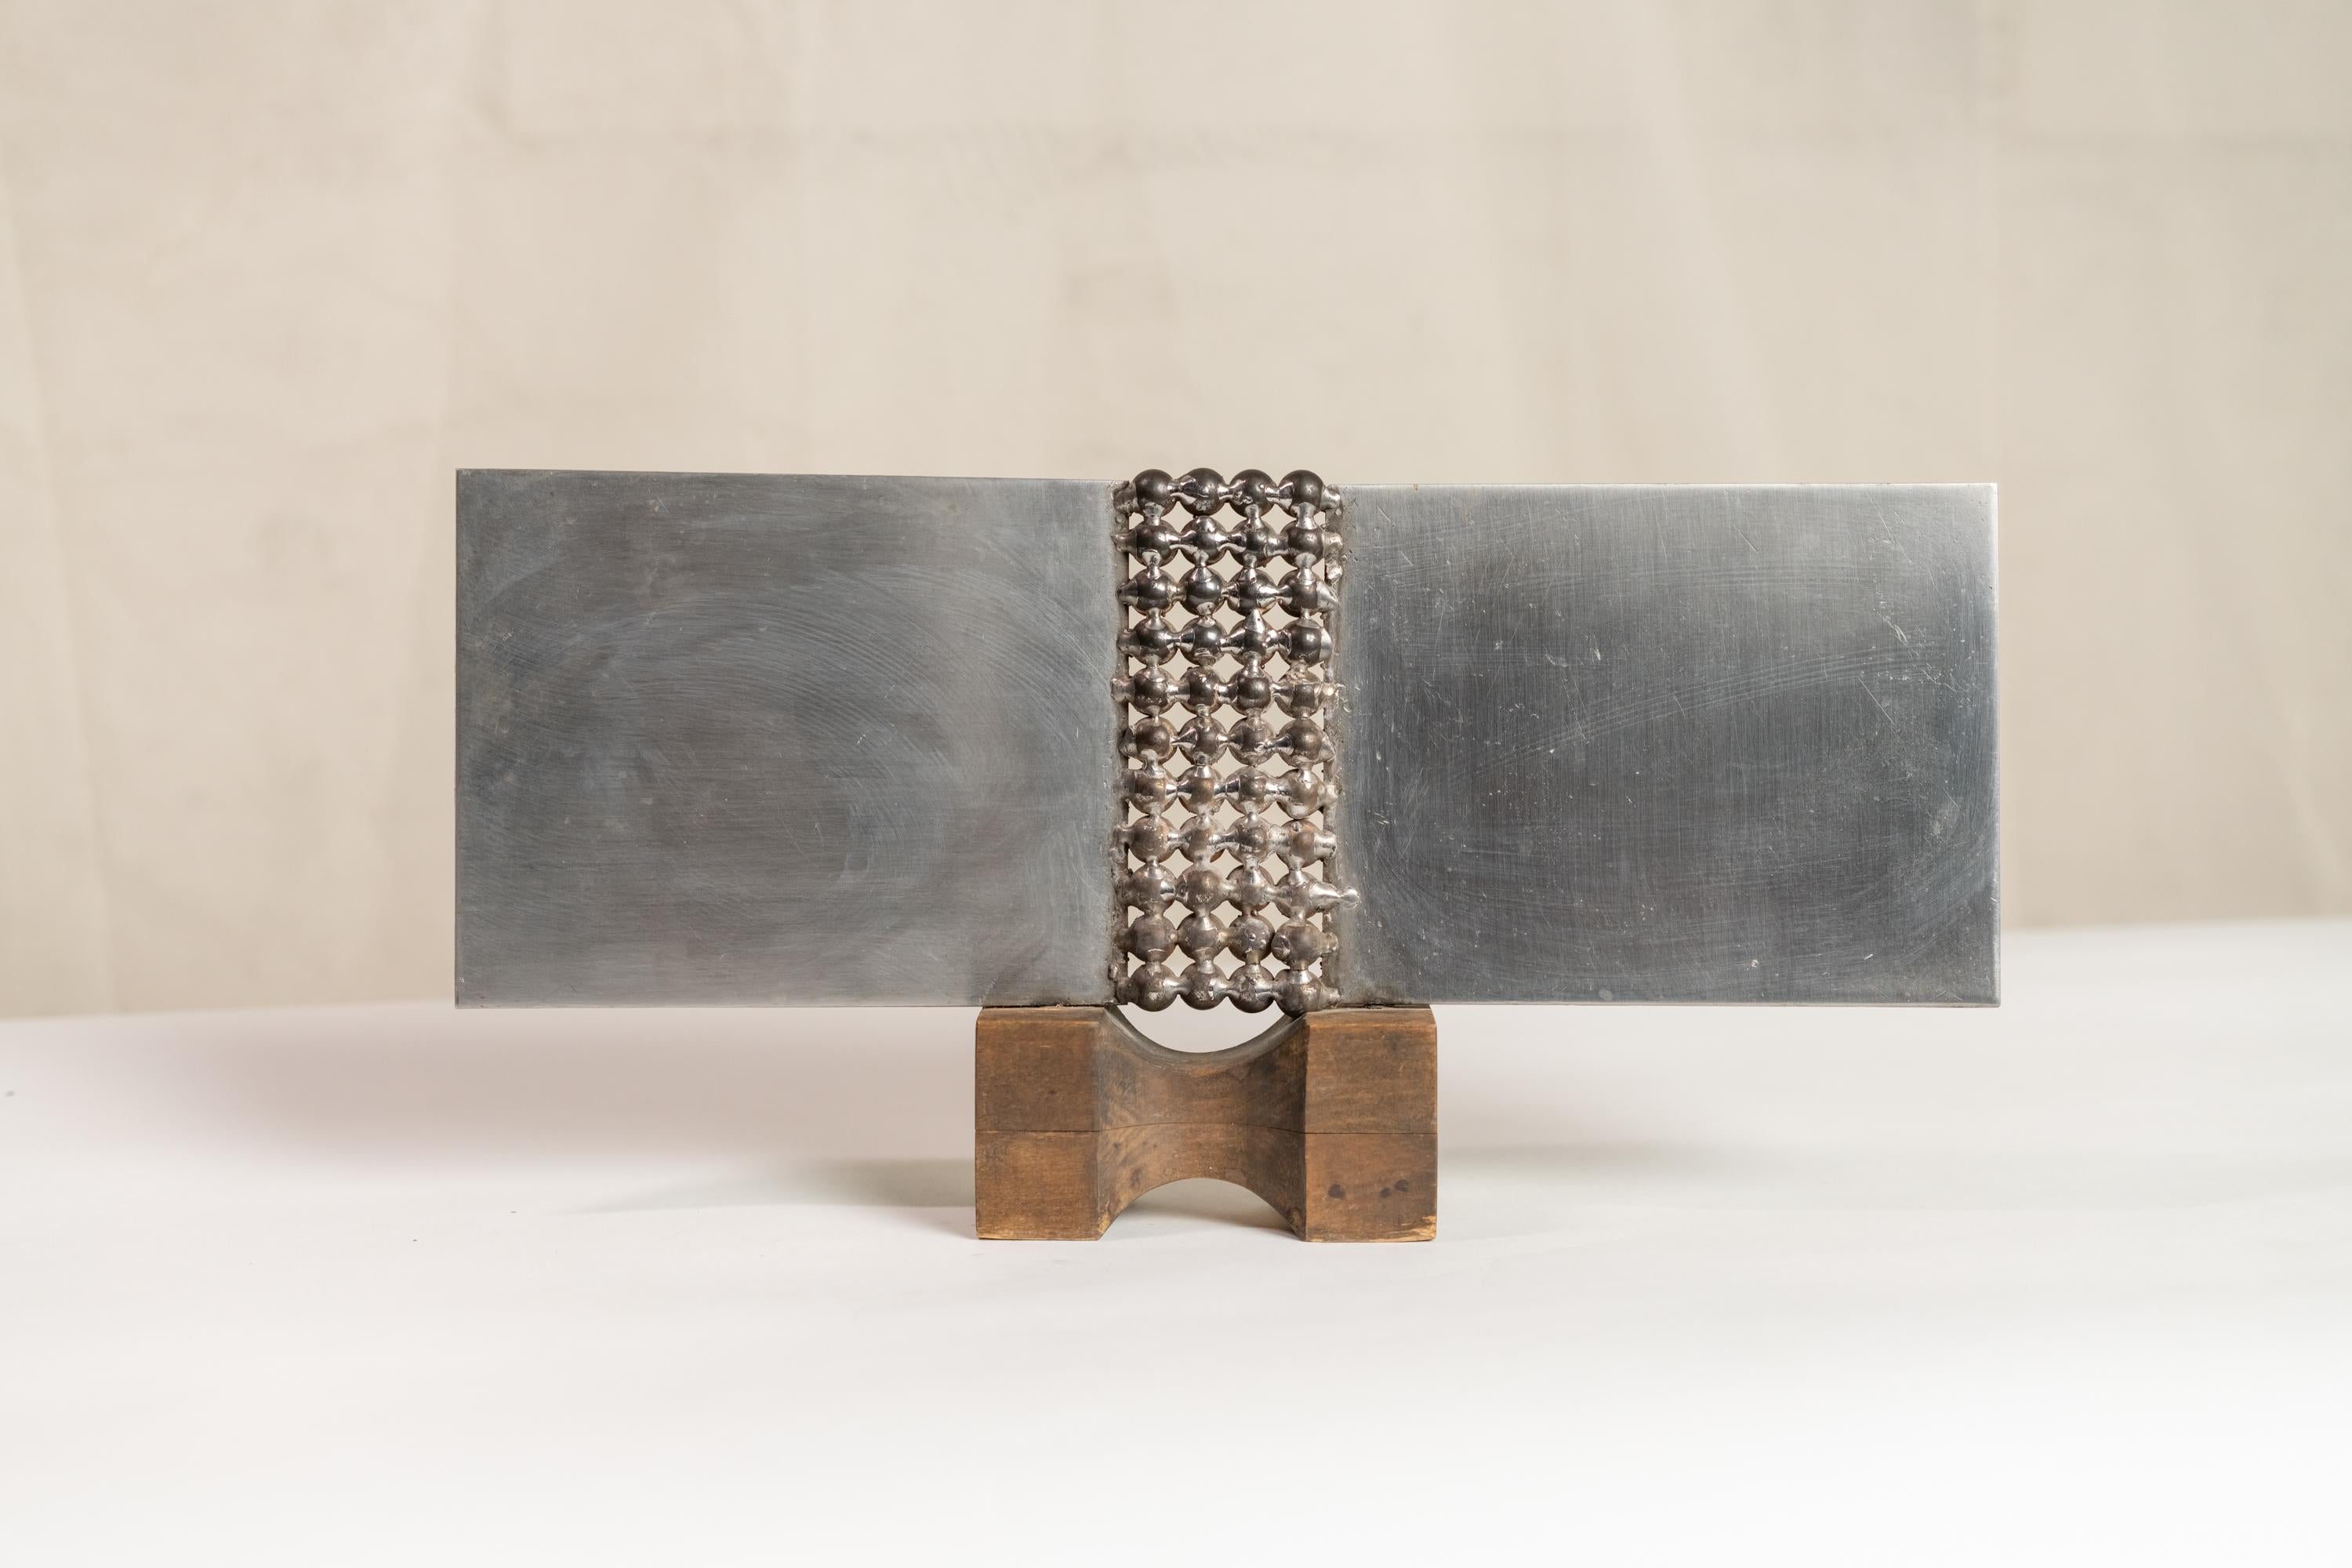 Modernistische abstrakte Skulptur aus poliertem Stahl, die auf einem Holzsockel ruht. Aufkleber: 